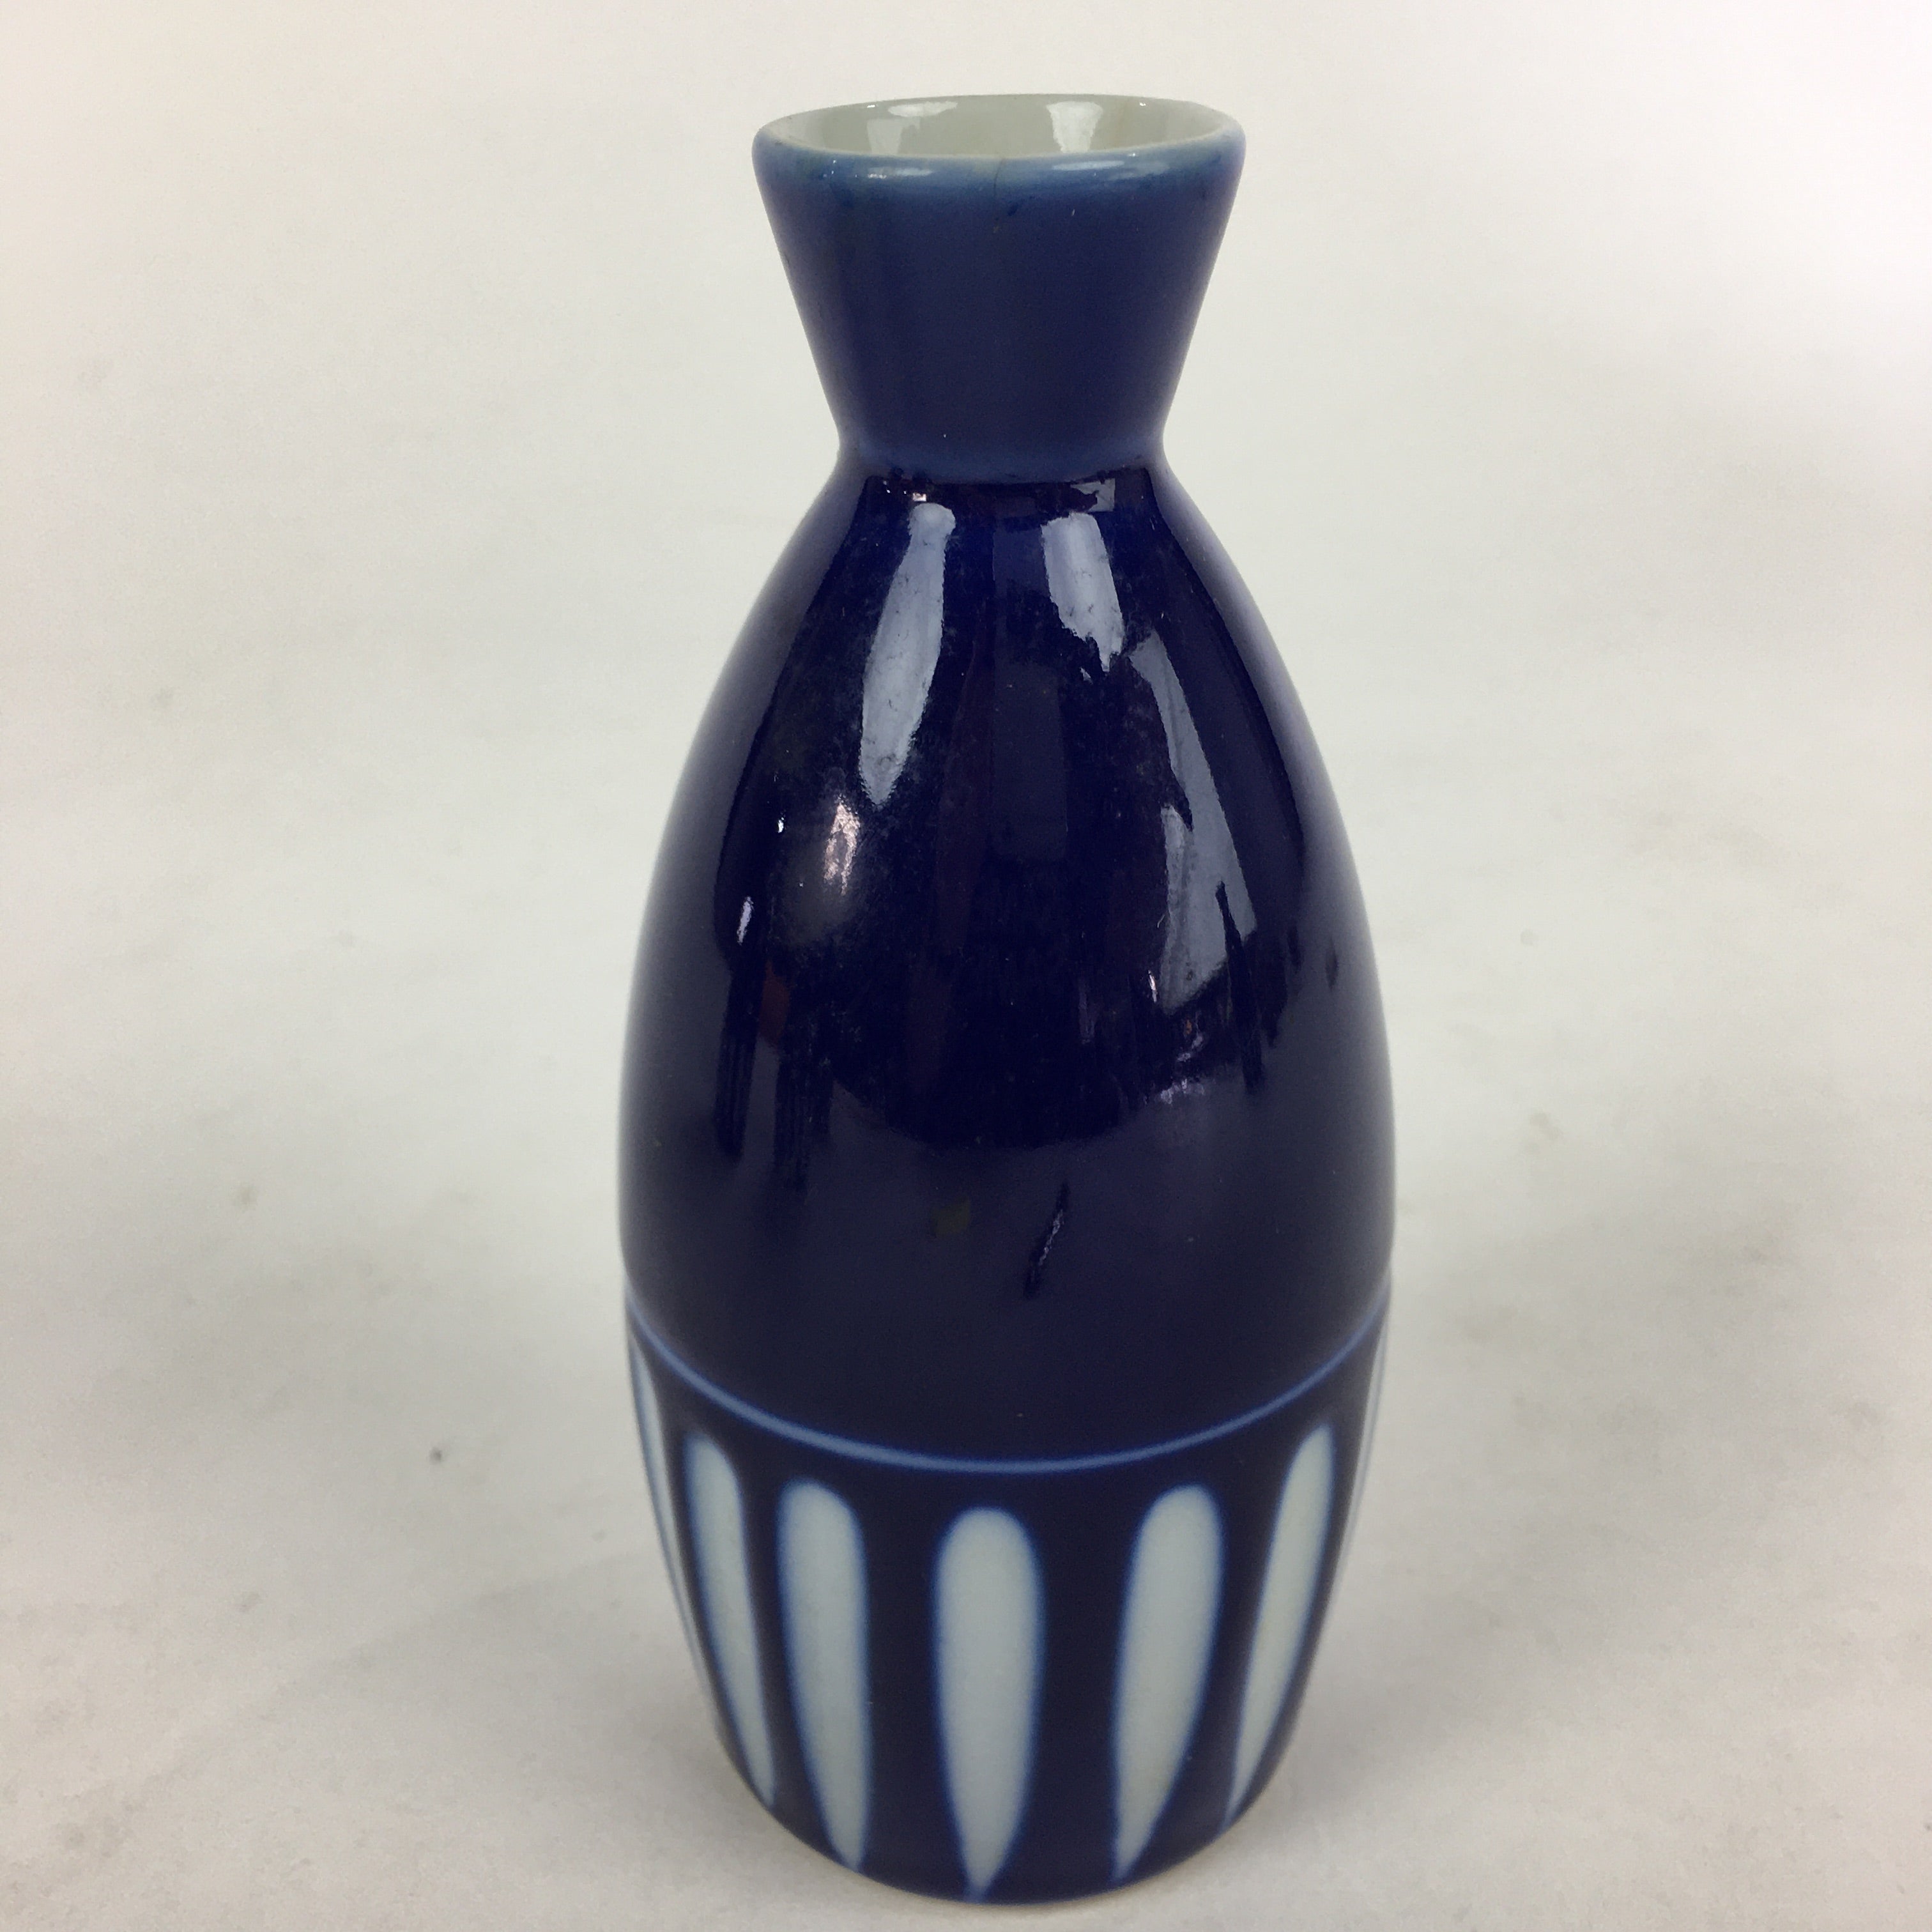 Japanese Porcelain Sake Bottle Vtg Blue White Shinogi Design Tokkuri TS354